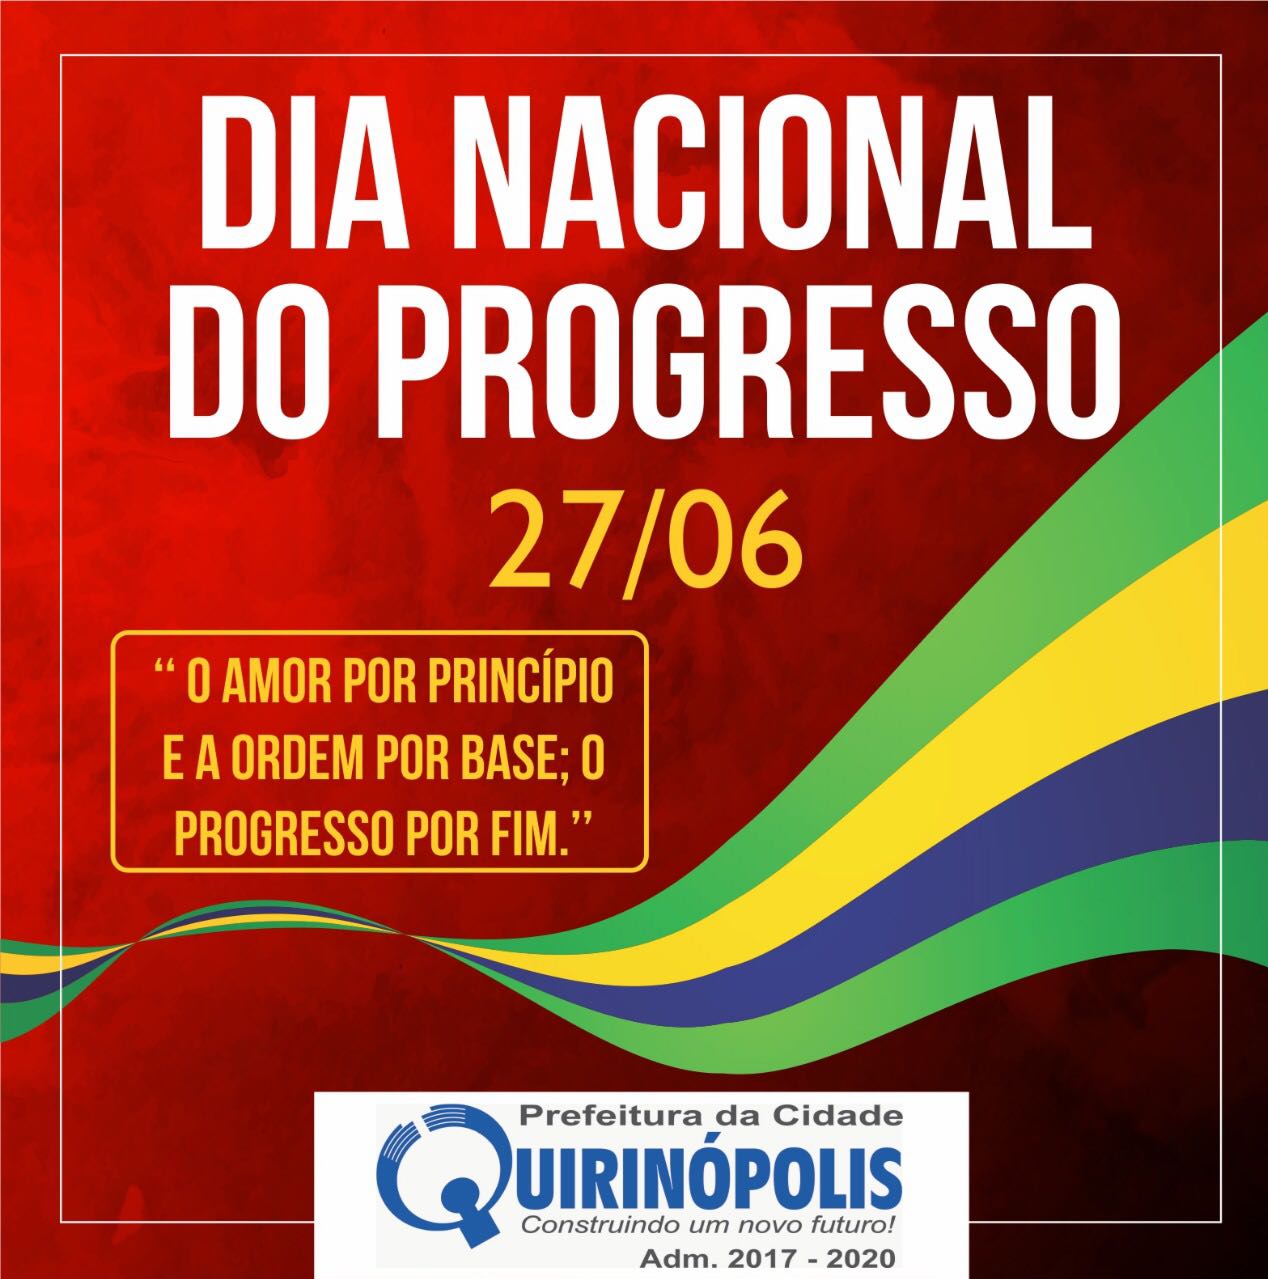 14 de dezembro – Dia Nacional de Combate à Pobreza – Prefeitura Municipal  de Quirinópolis – GO